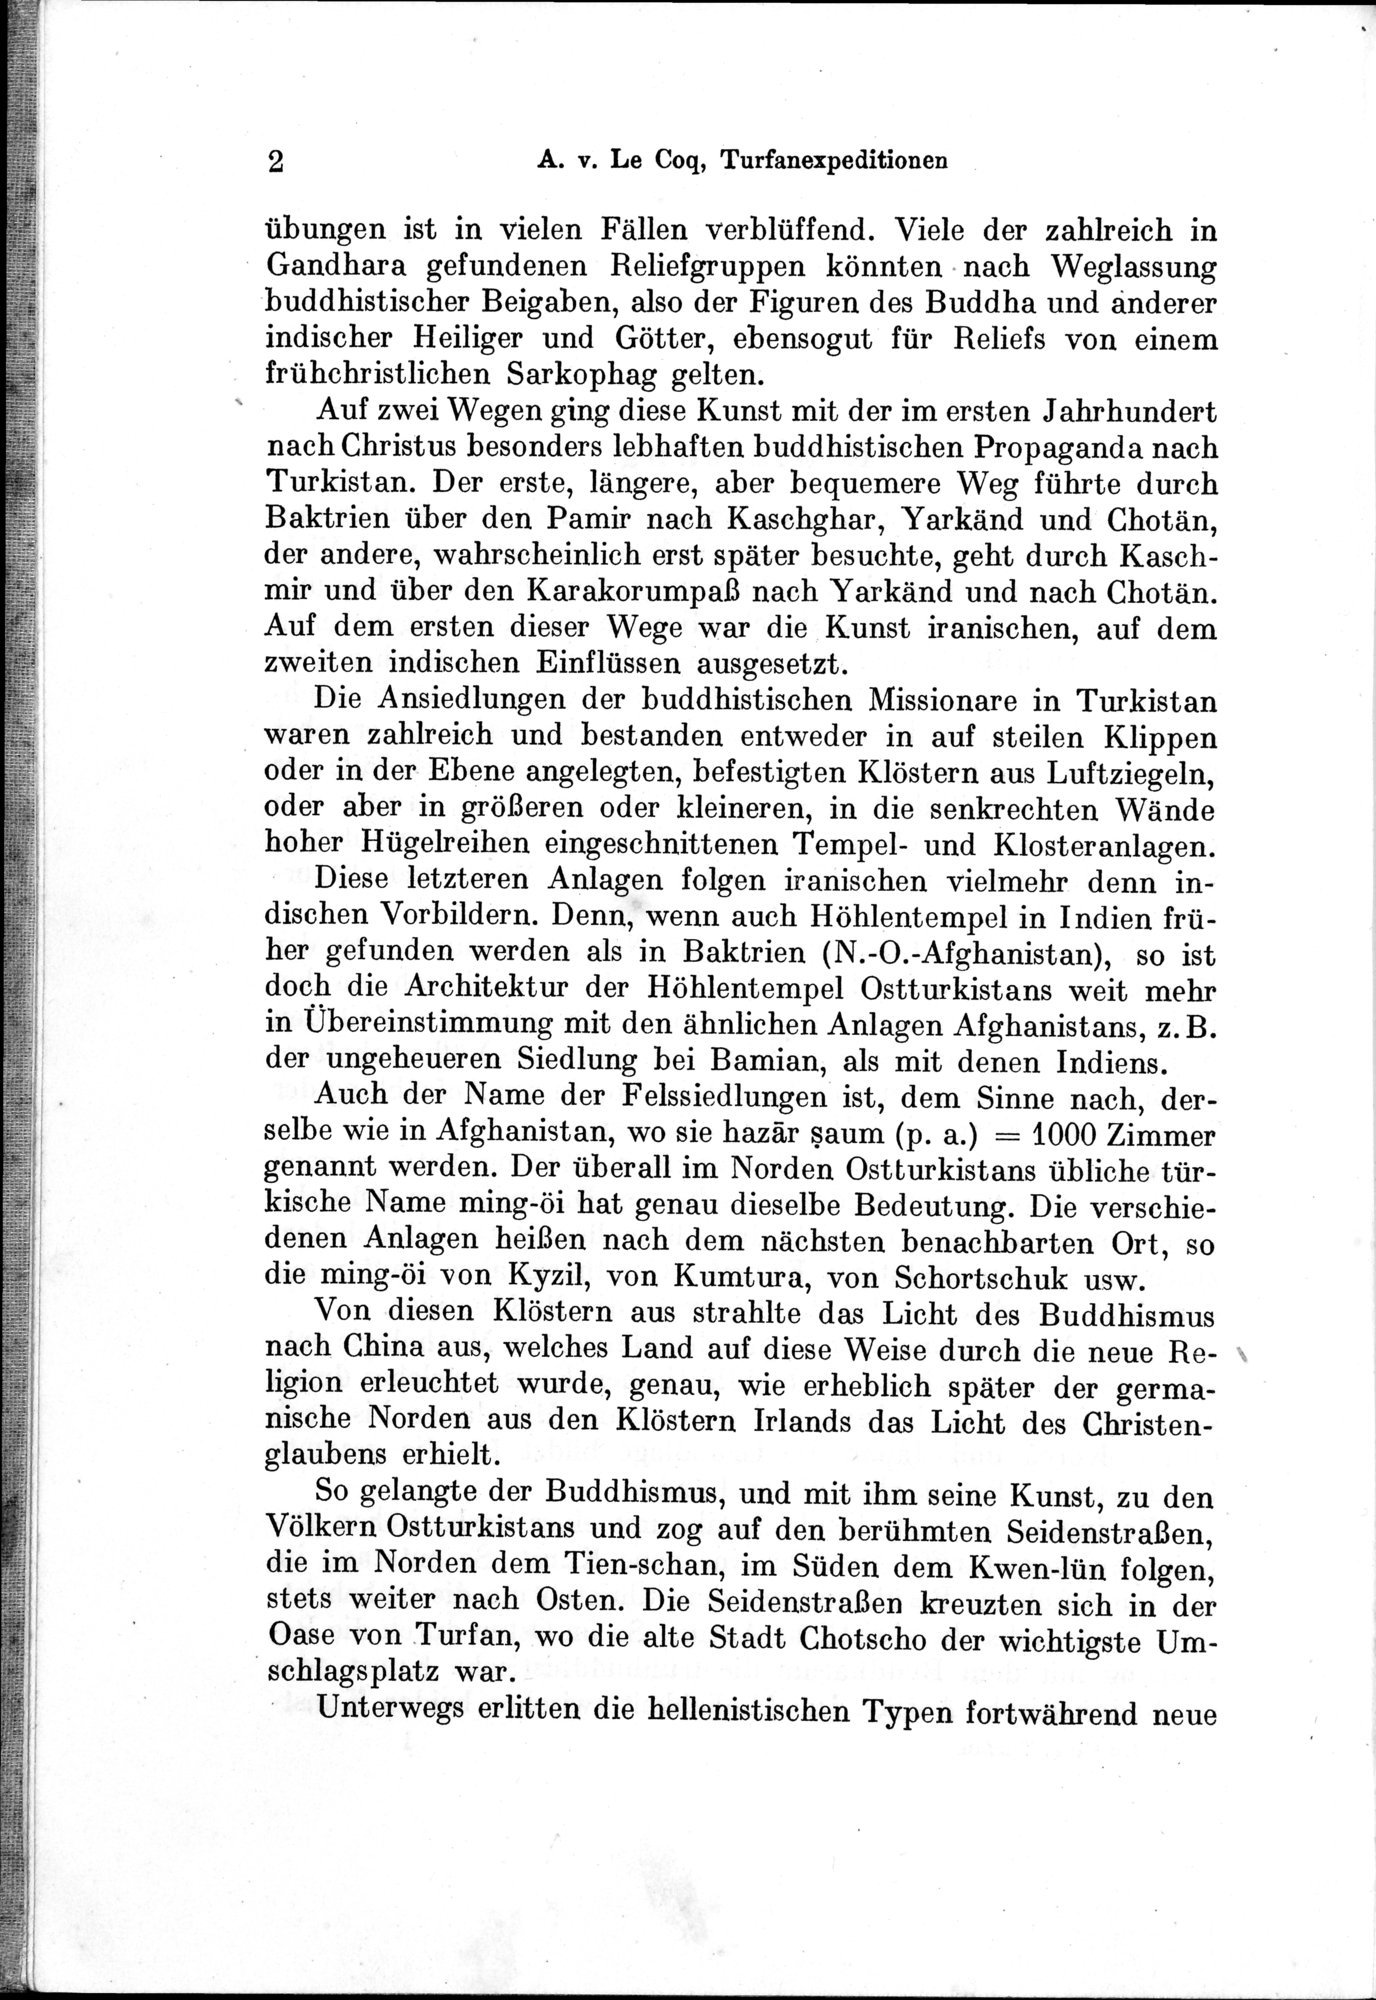 Auf Hellas Spuren in Ostturkistan : vol.1 / Page 18 (Grayscale High Resolution Image)